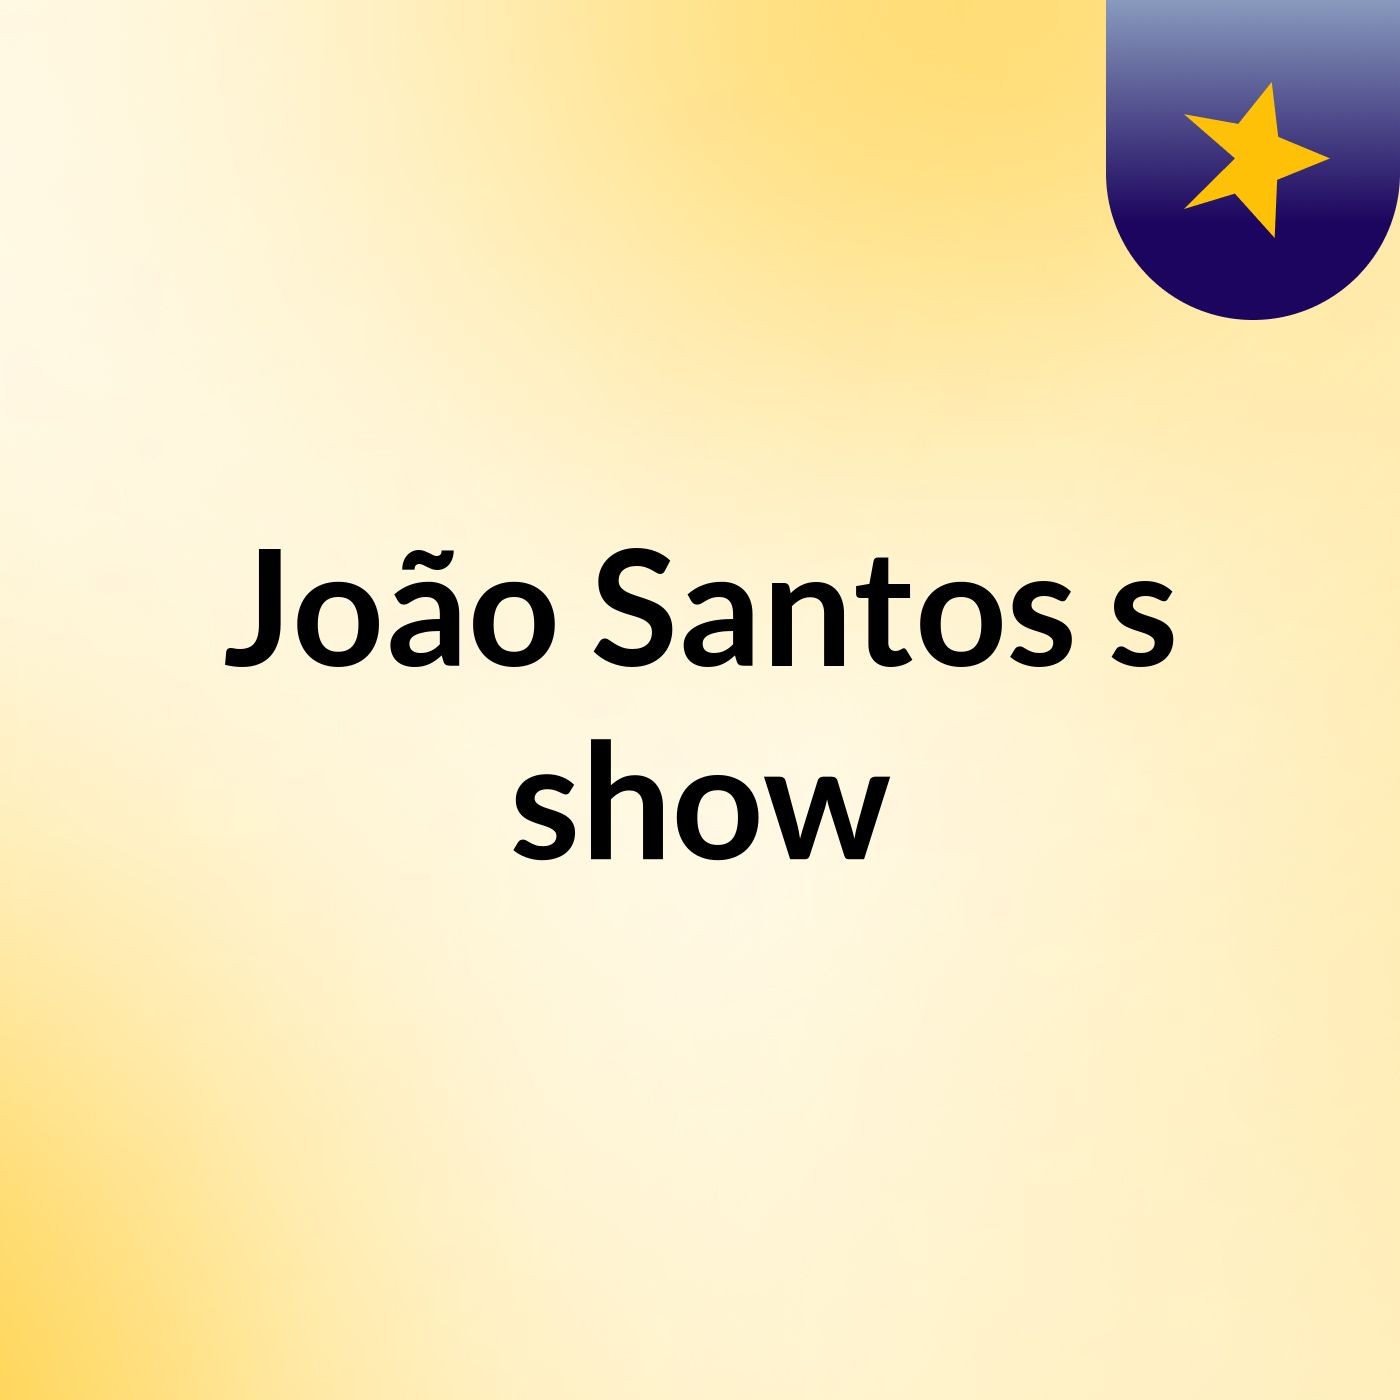 João Santos's show